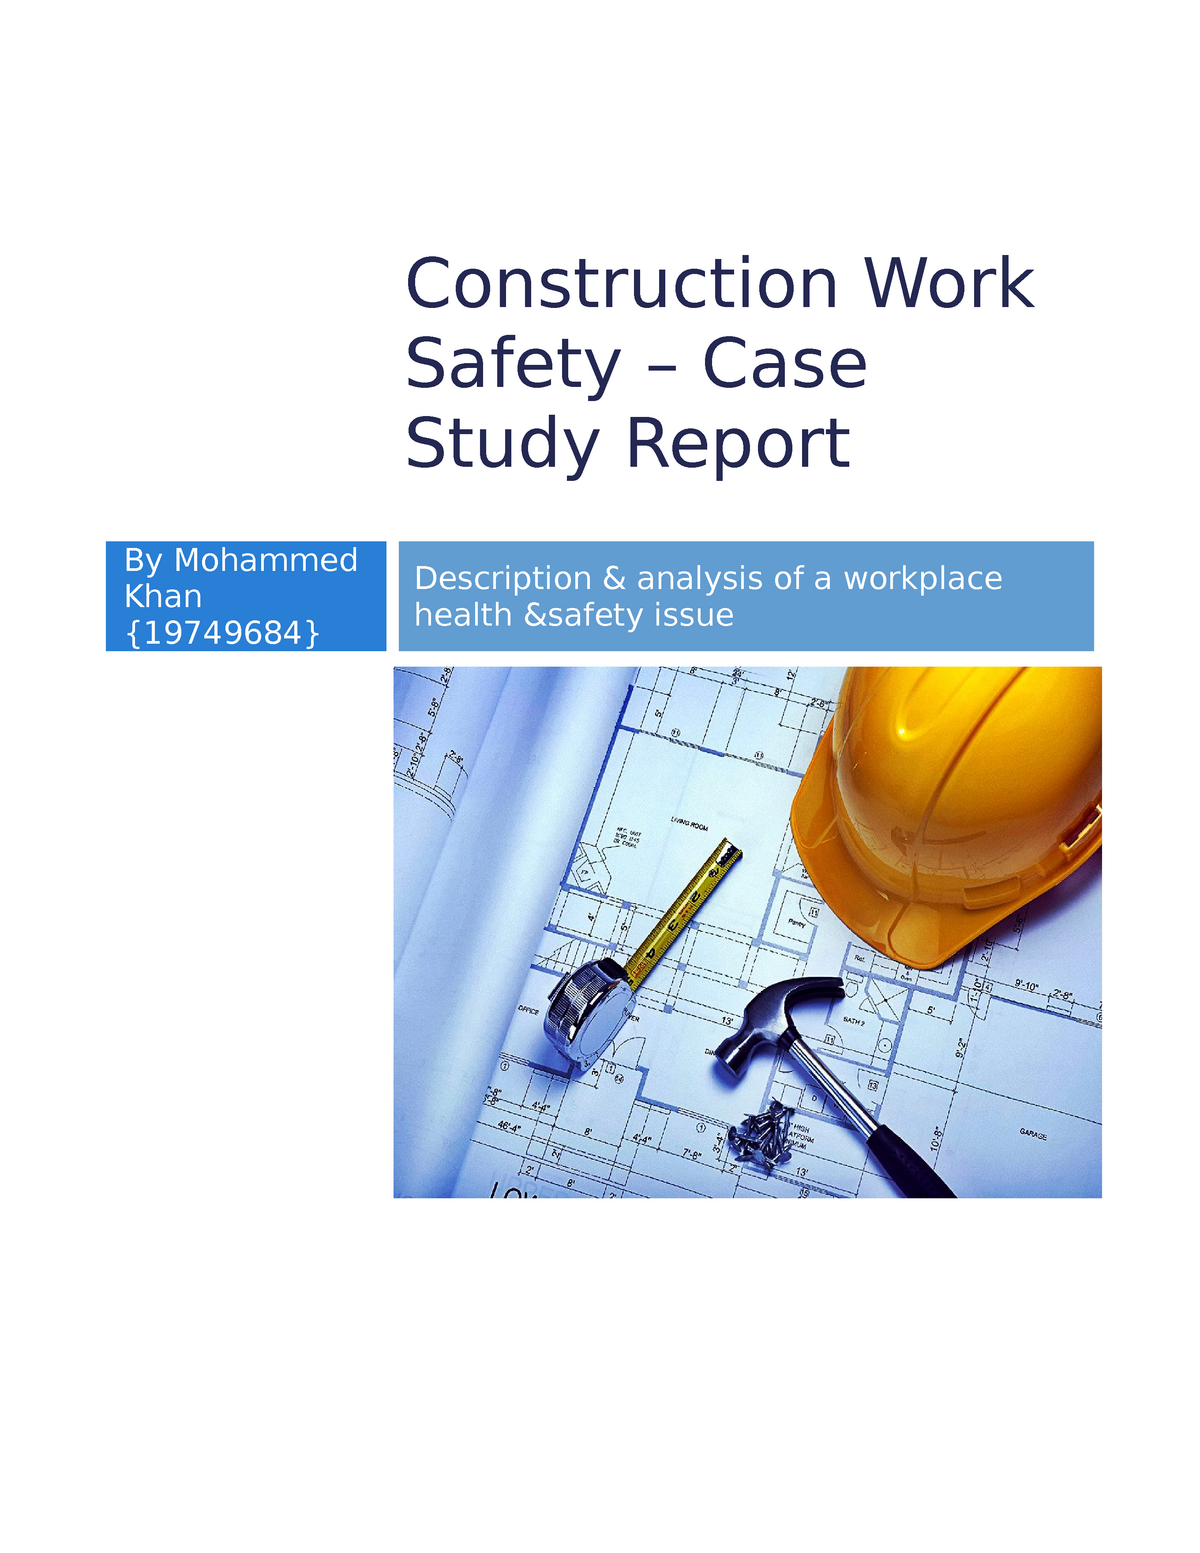 construction case study question